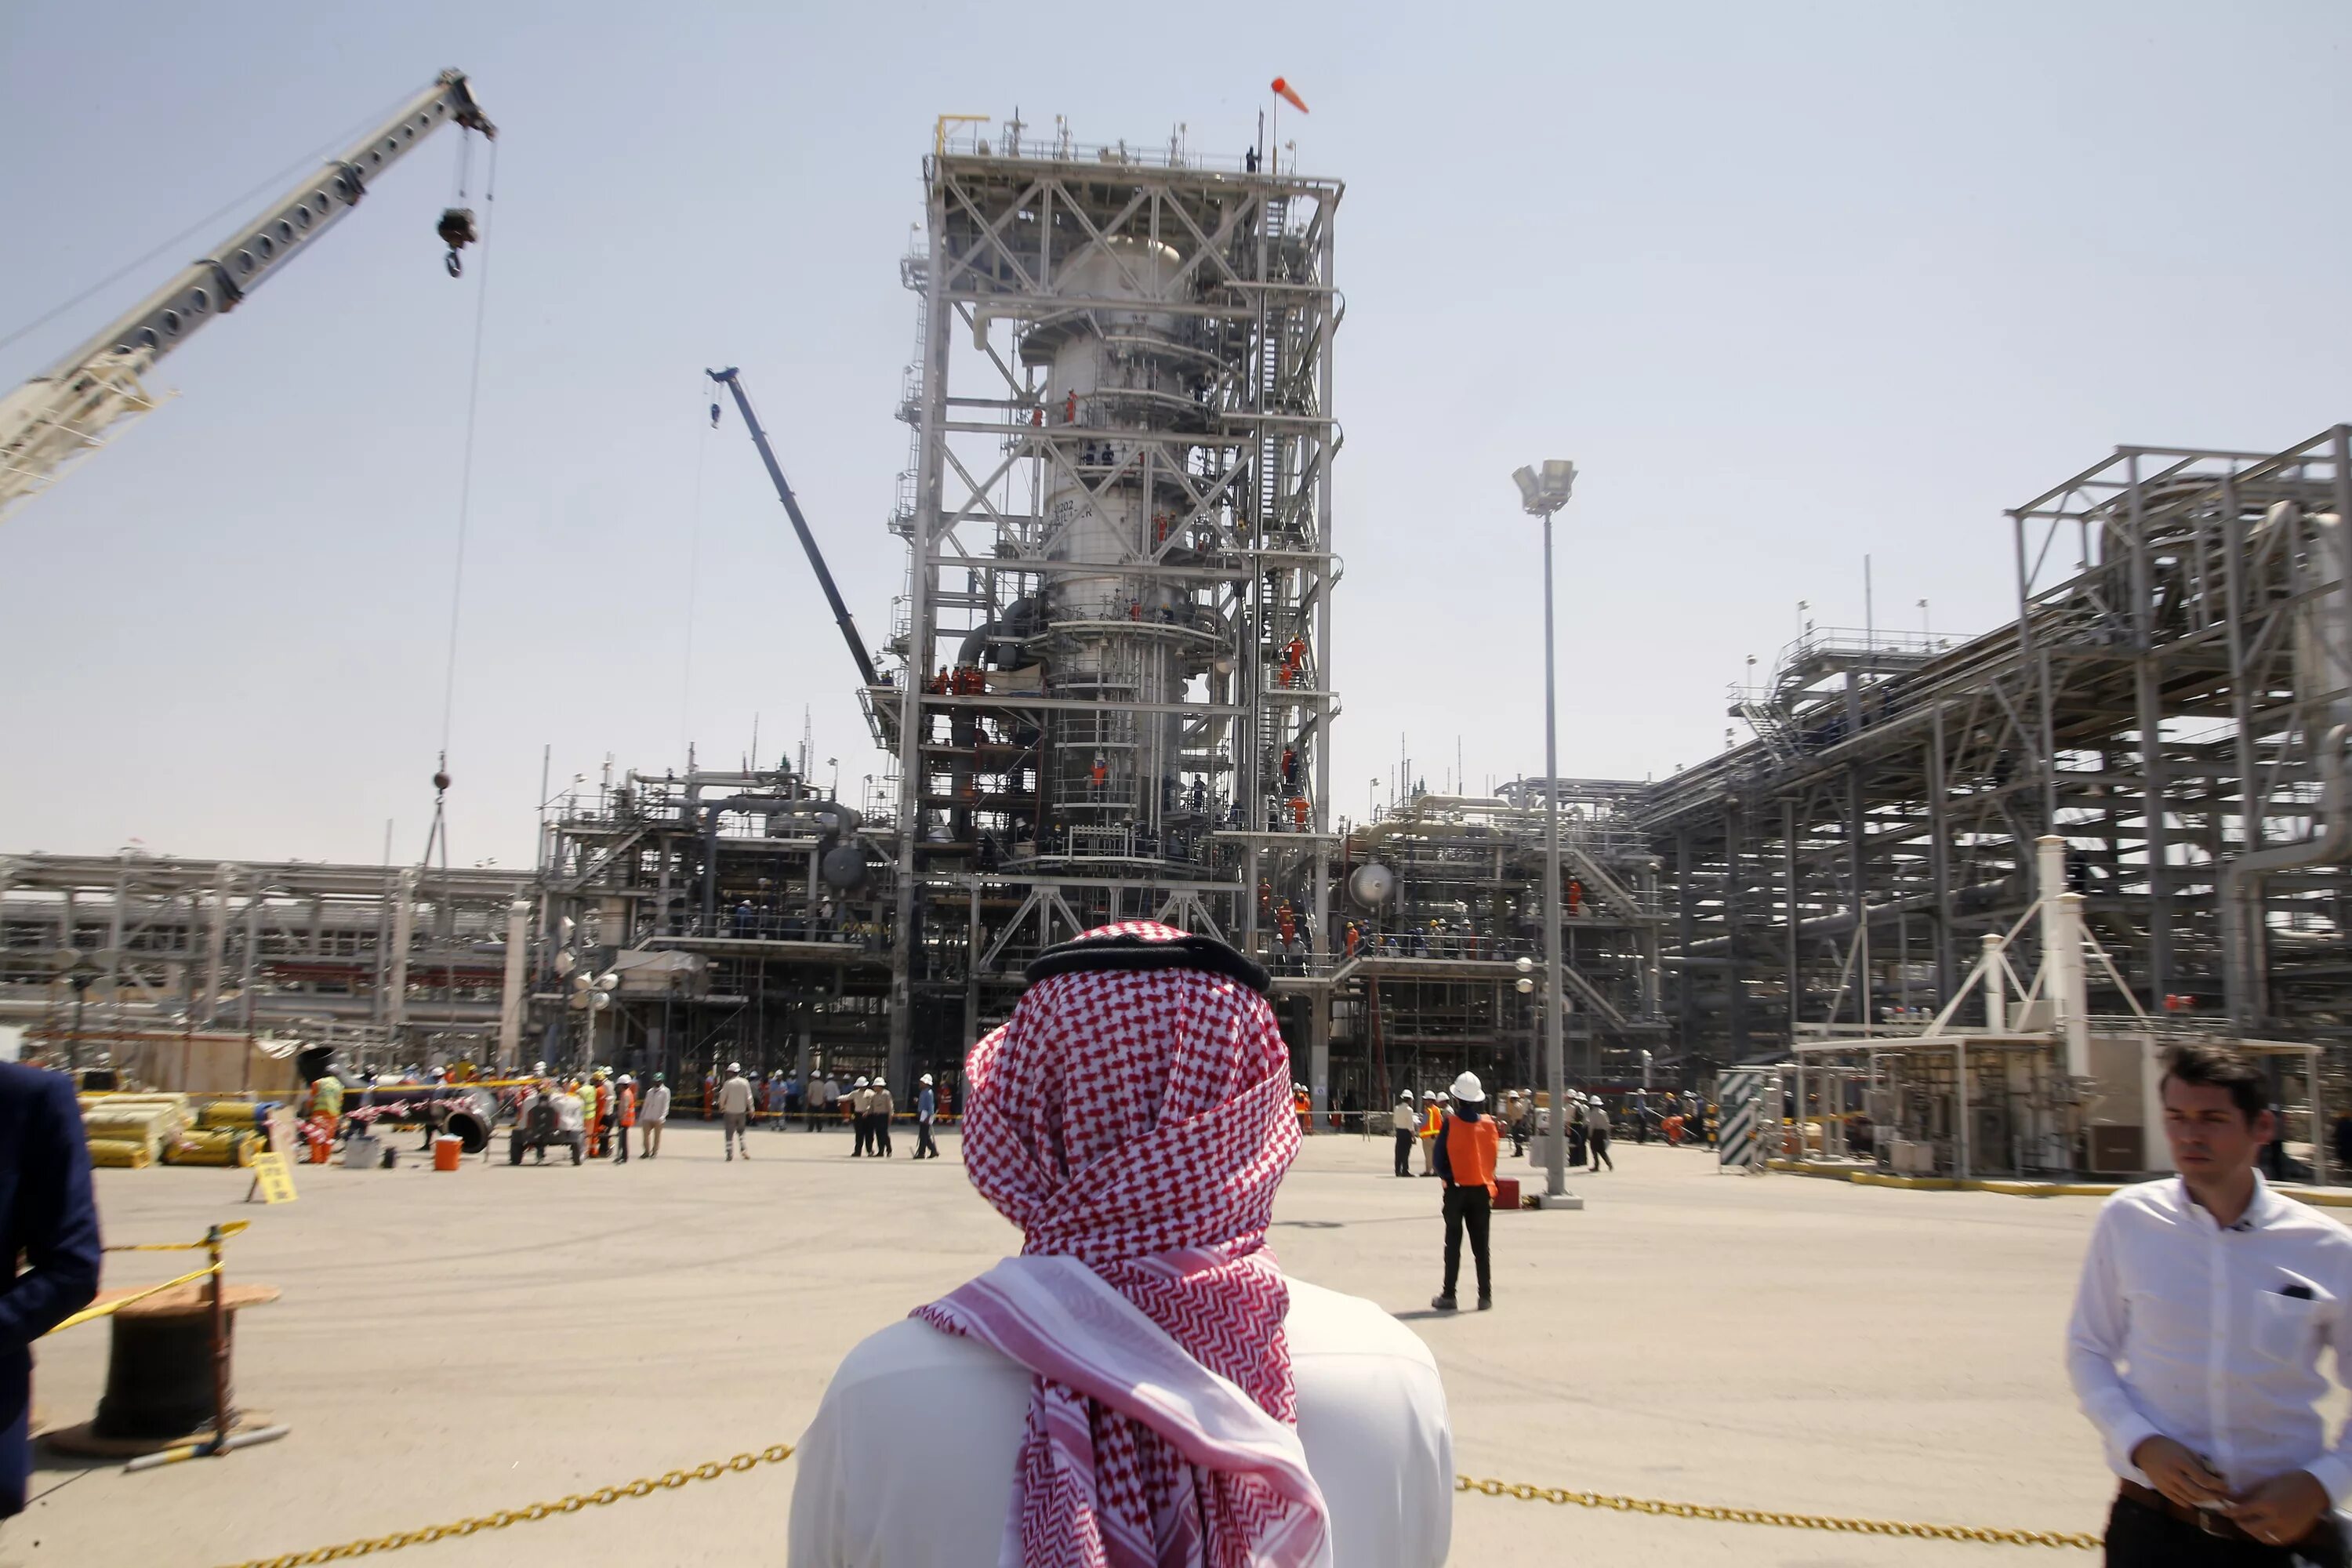 Нефтеперерабатывающий завод в Саудовской Аравии. Объединённые арабские эмираты добыча нефти. Саудовская Аравия нефтедобыча. Нефтедобыча в ОАЭ. Саудовская аравия организация